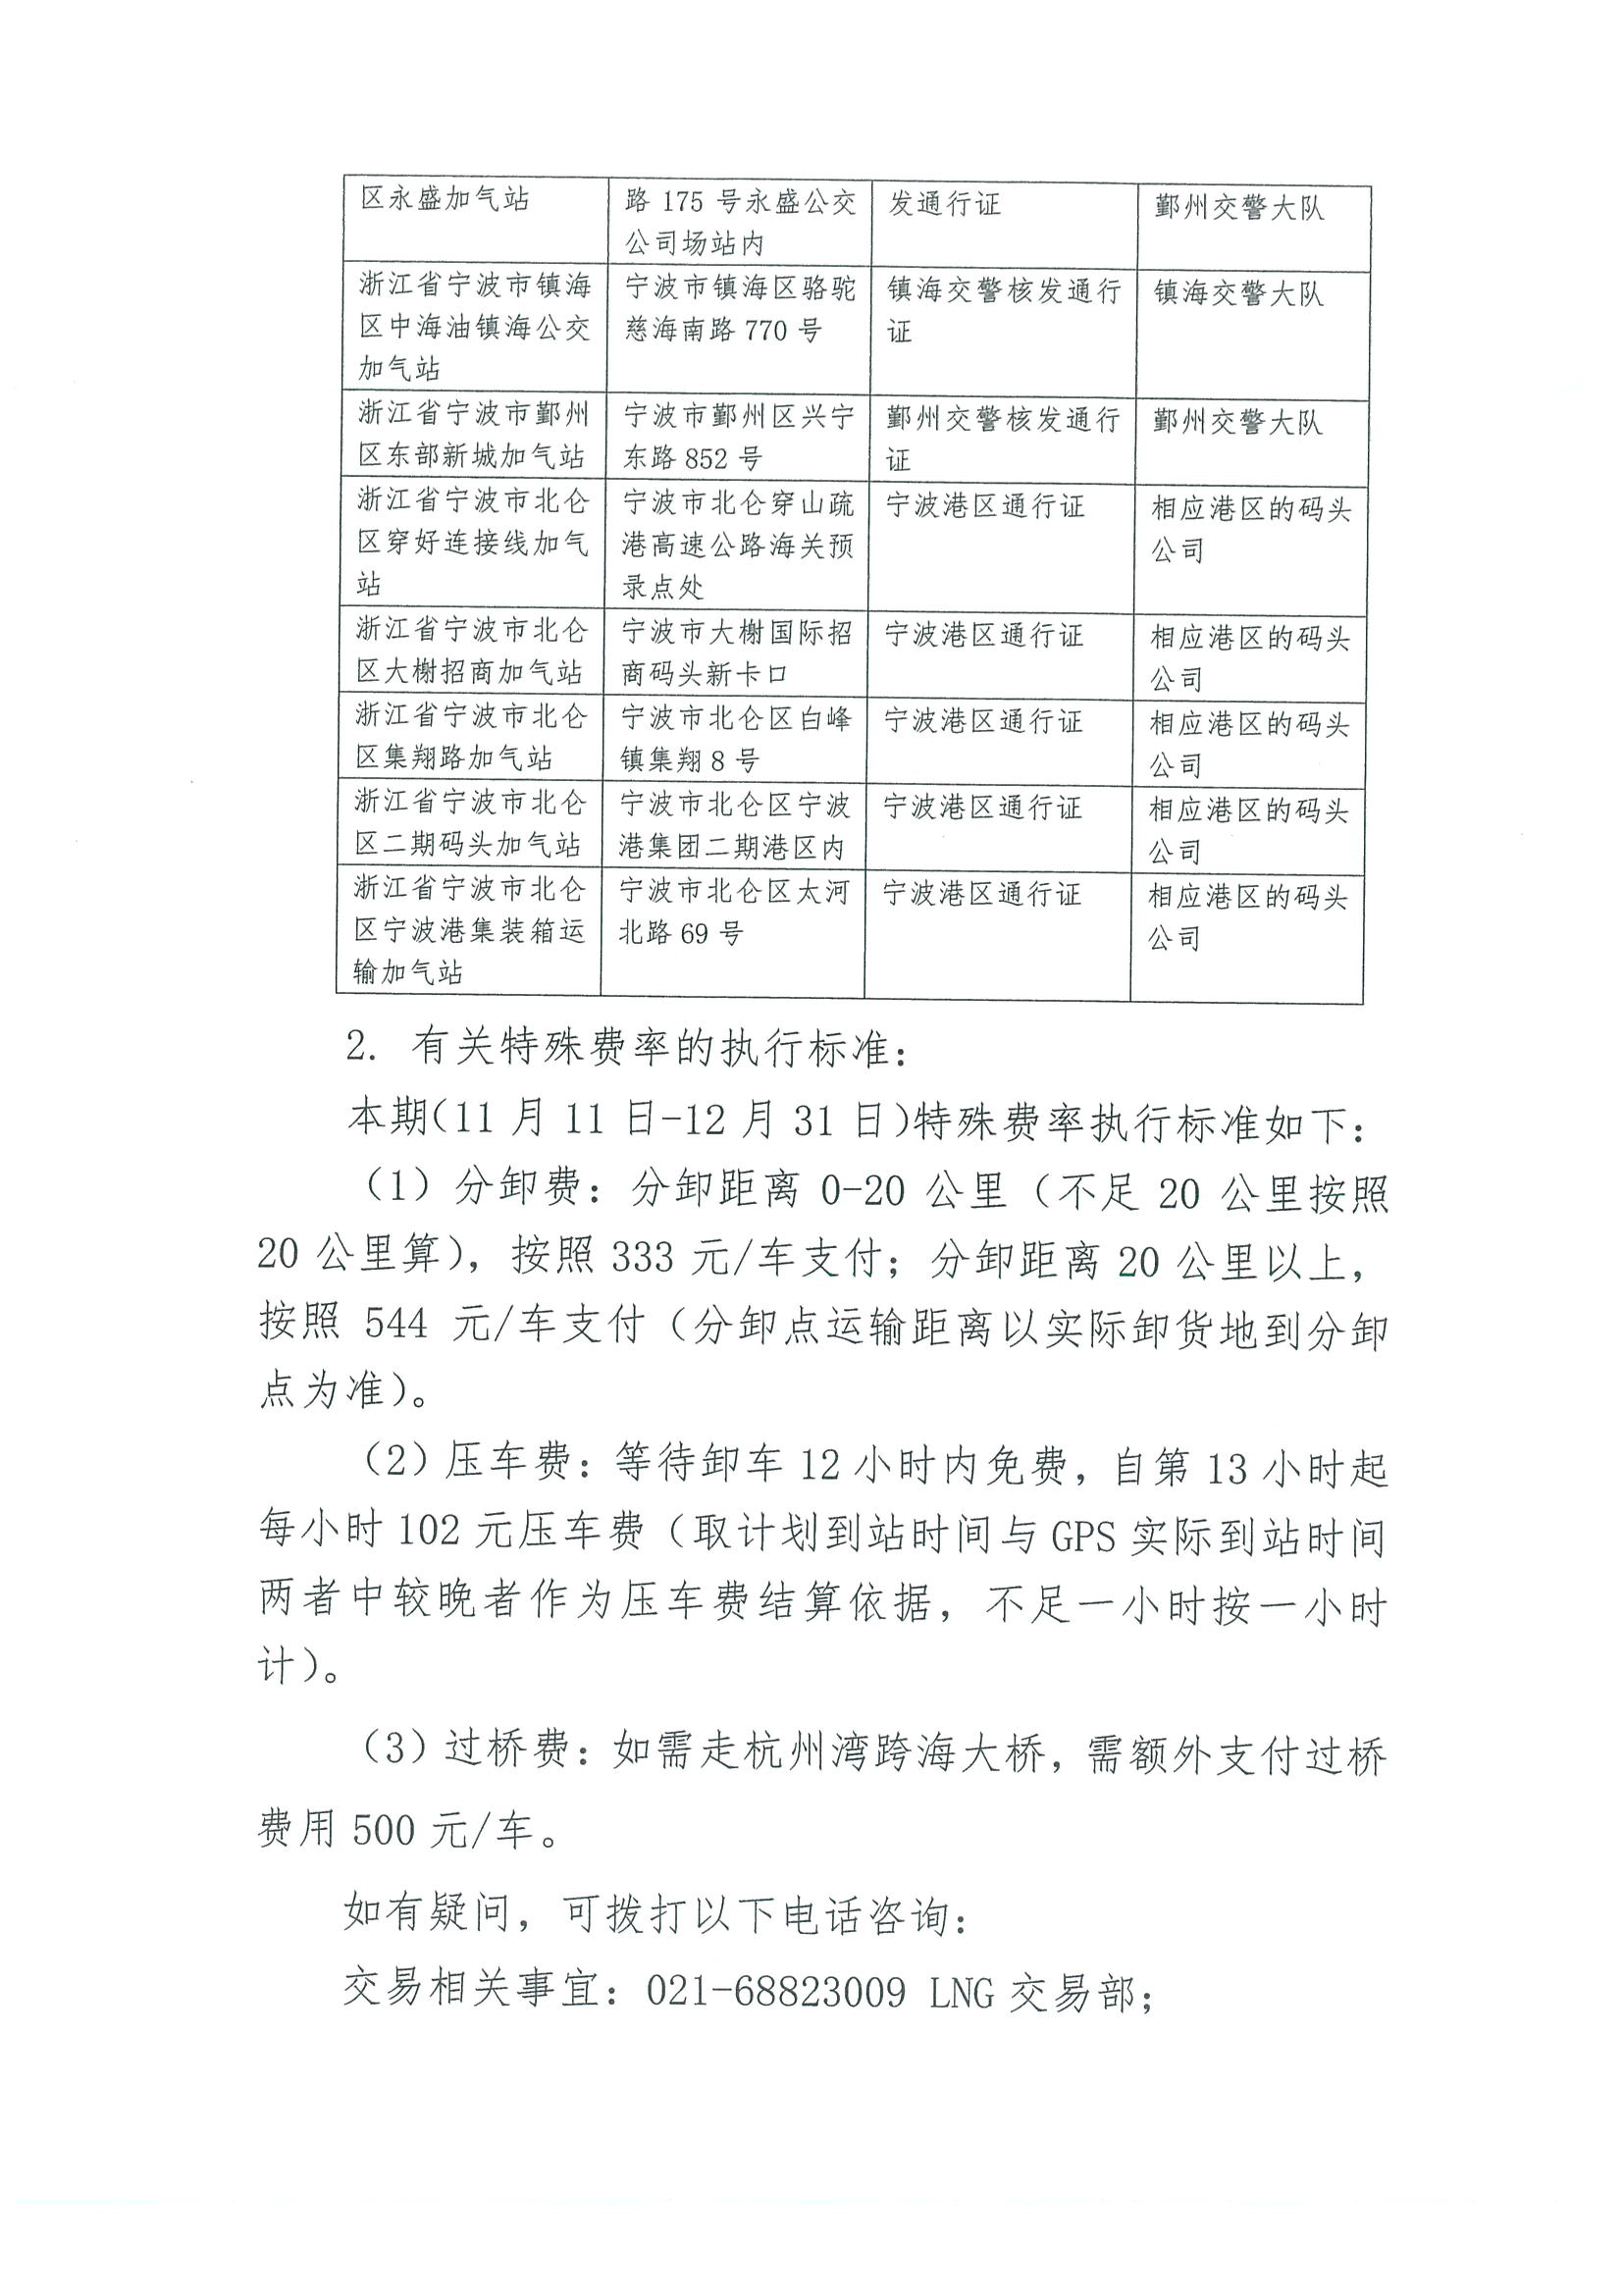 附件3、关于开展LNG运力竞价交易的公告11.9_页面_5.png